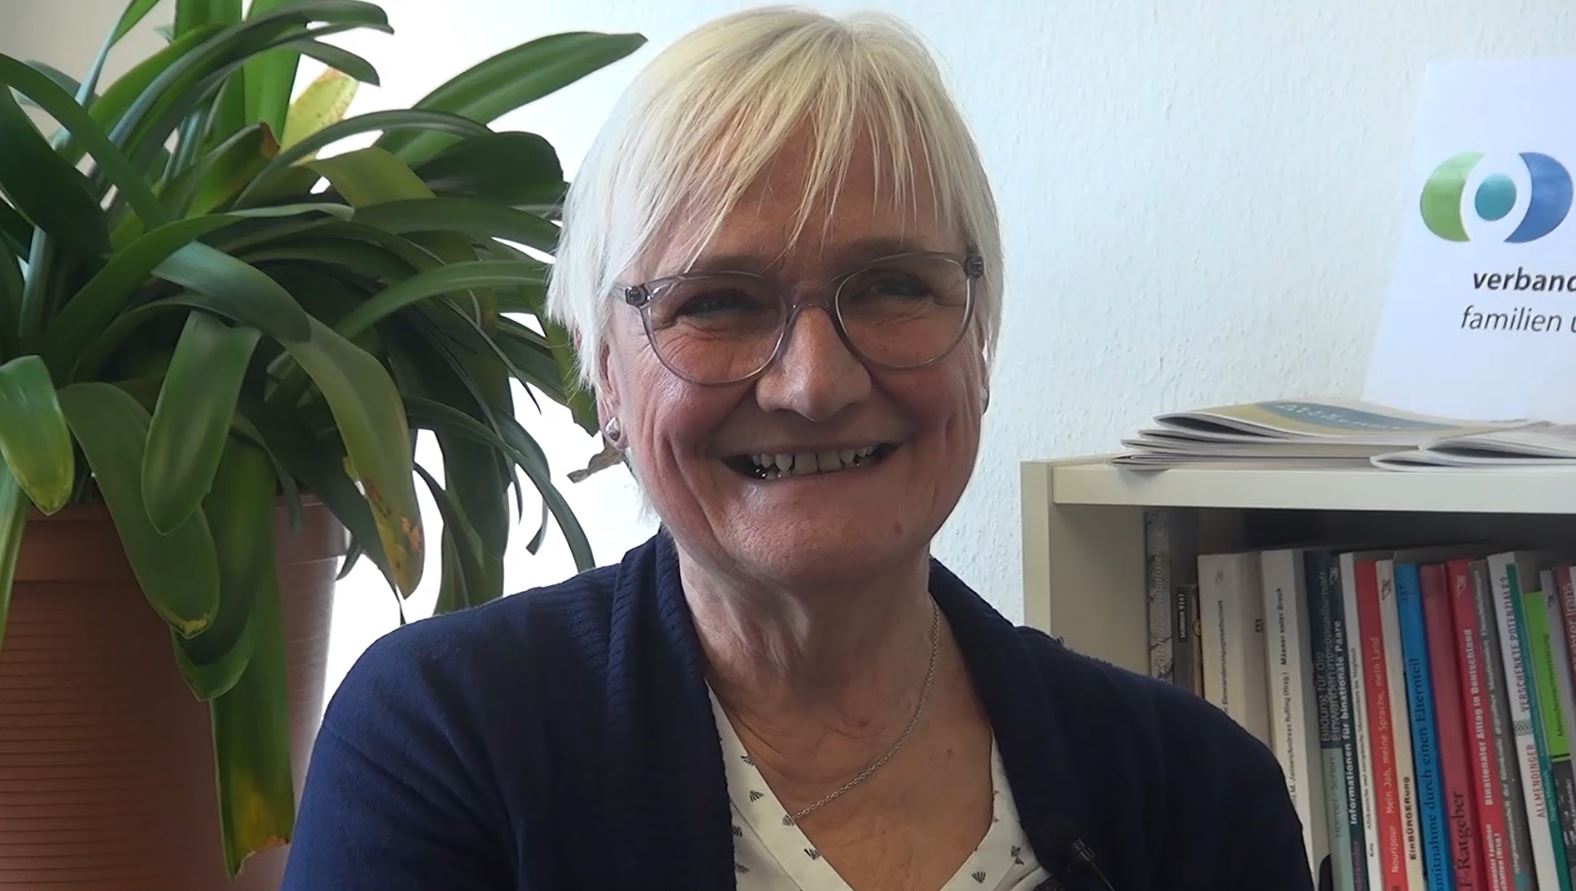 40 Jahre lang war Hiltrud Stöcker-Zafari im Verband binationaler Familien und Partnerschaften aktiv, die letzten zehn Jahre als Geschäftsführerin. Jetzt geht sie in den Ruhestand. Foto: vbfp